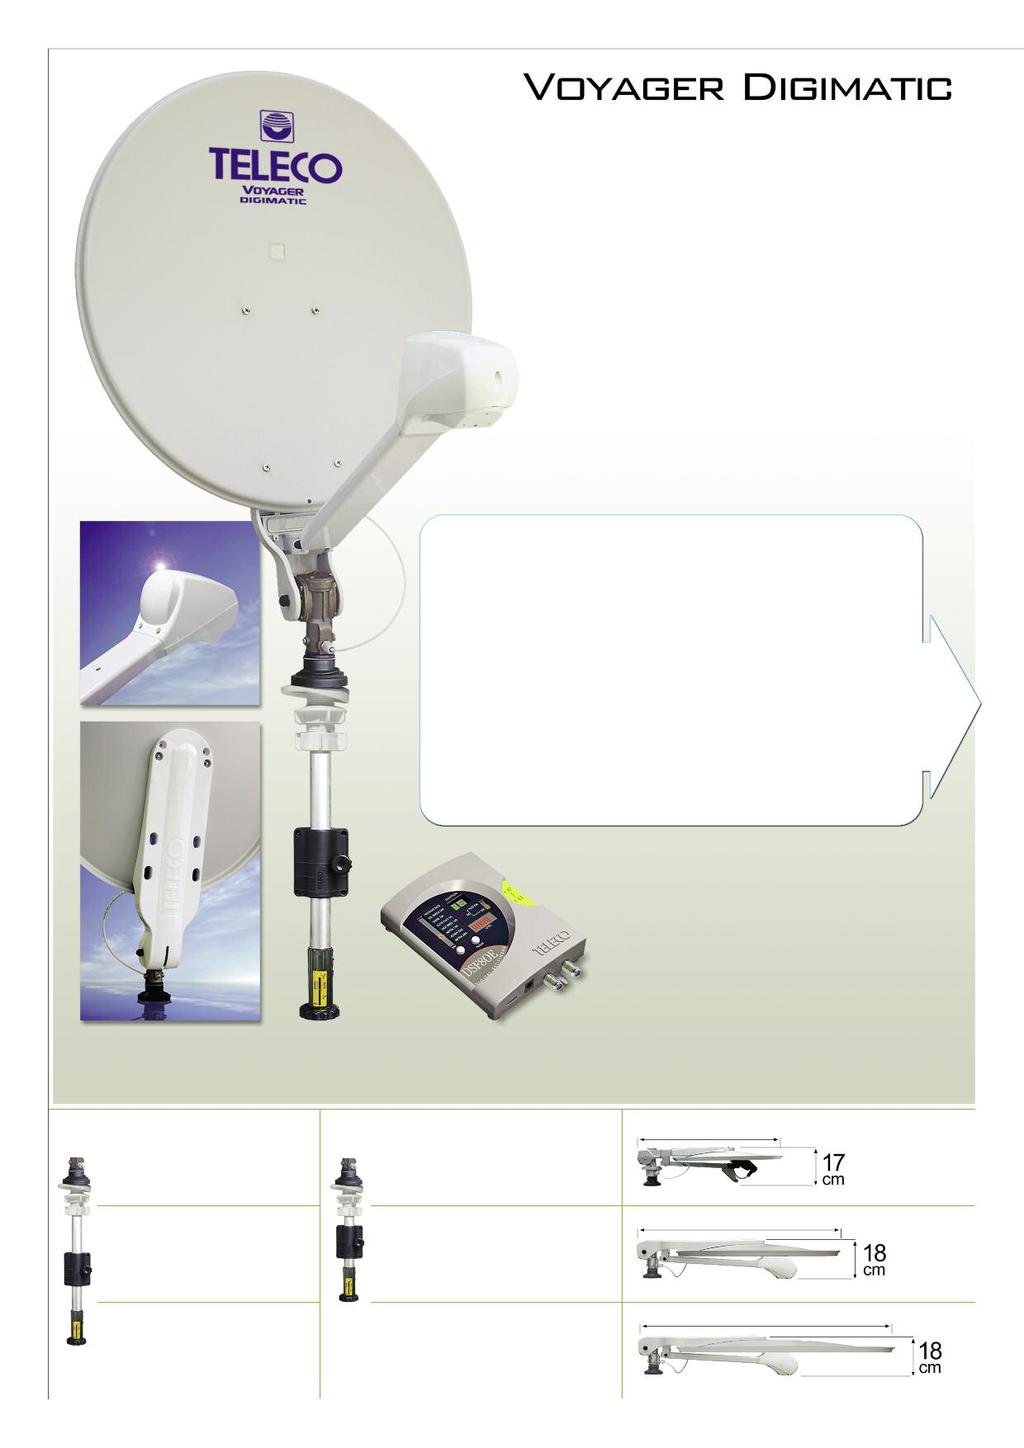 Antenne Satellite Manuelle avec Pointeur Numérique équipé d Inclinomètre électronique Le Voyager Digimatic a été spécialement conçu et réalisé par Teleco pour permettre à l utilisateur le pointage